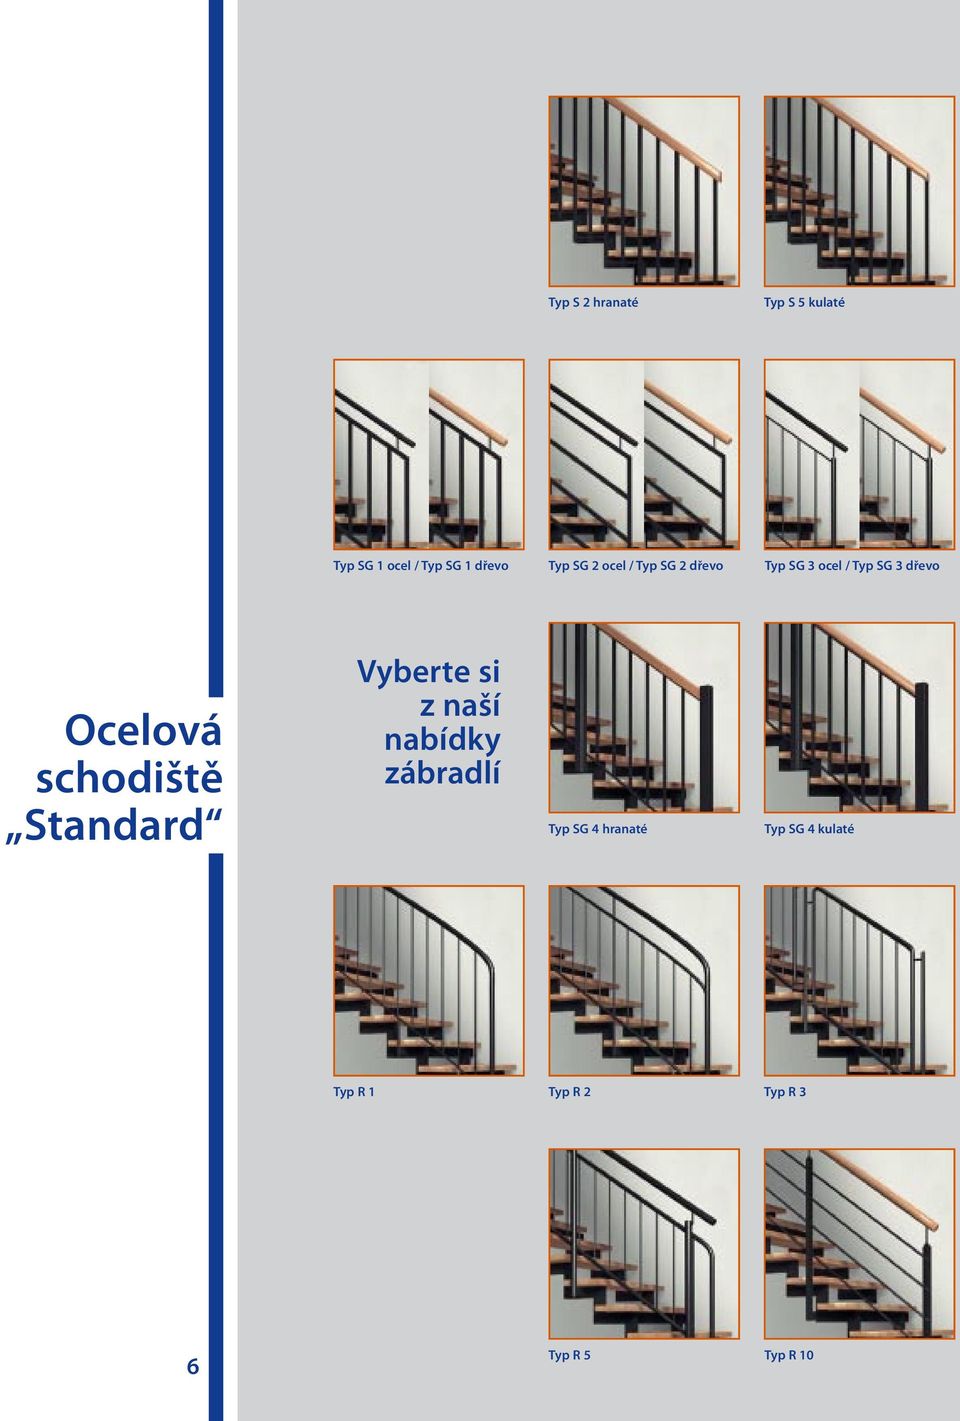 schodiště Standard Vyberte si z naší nabídky zábradlí Typ SG 4